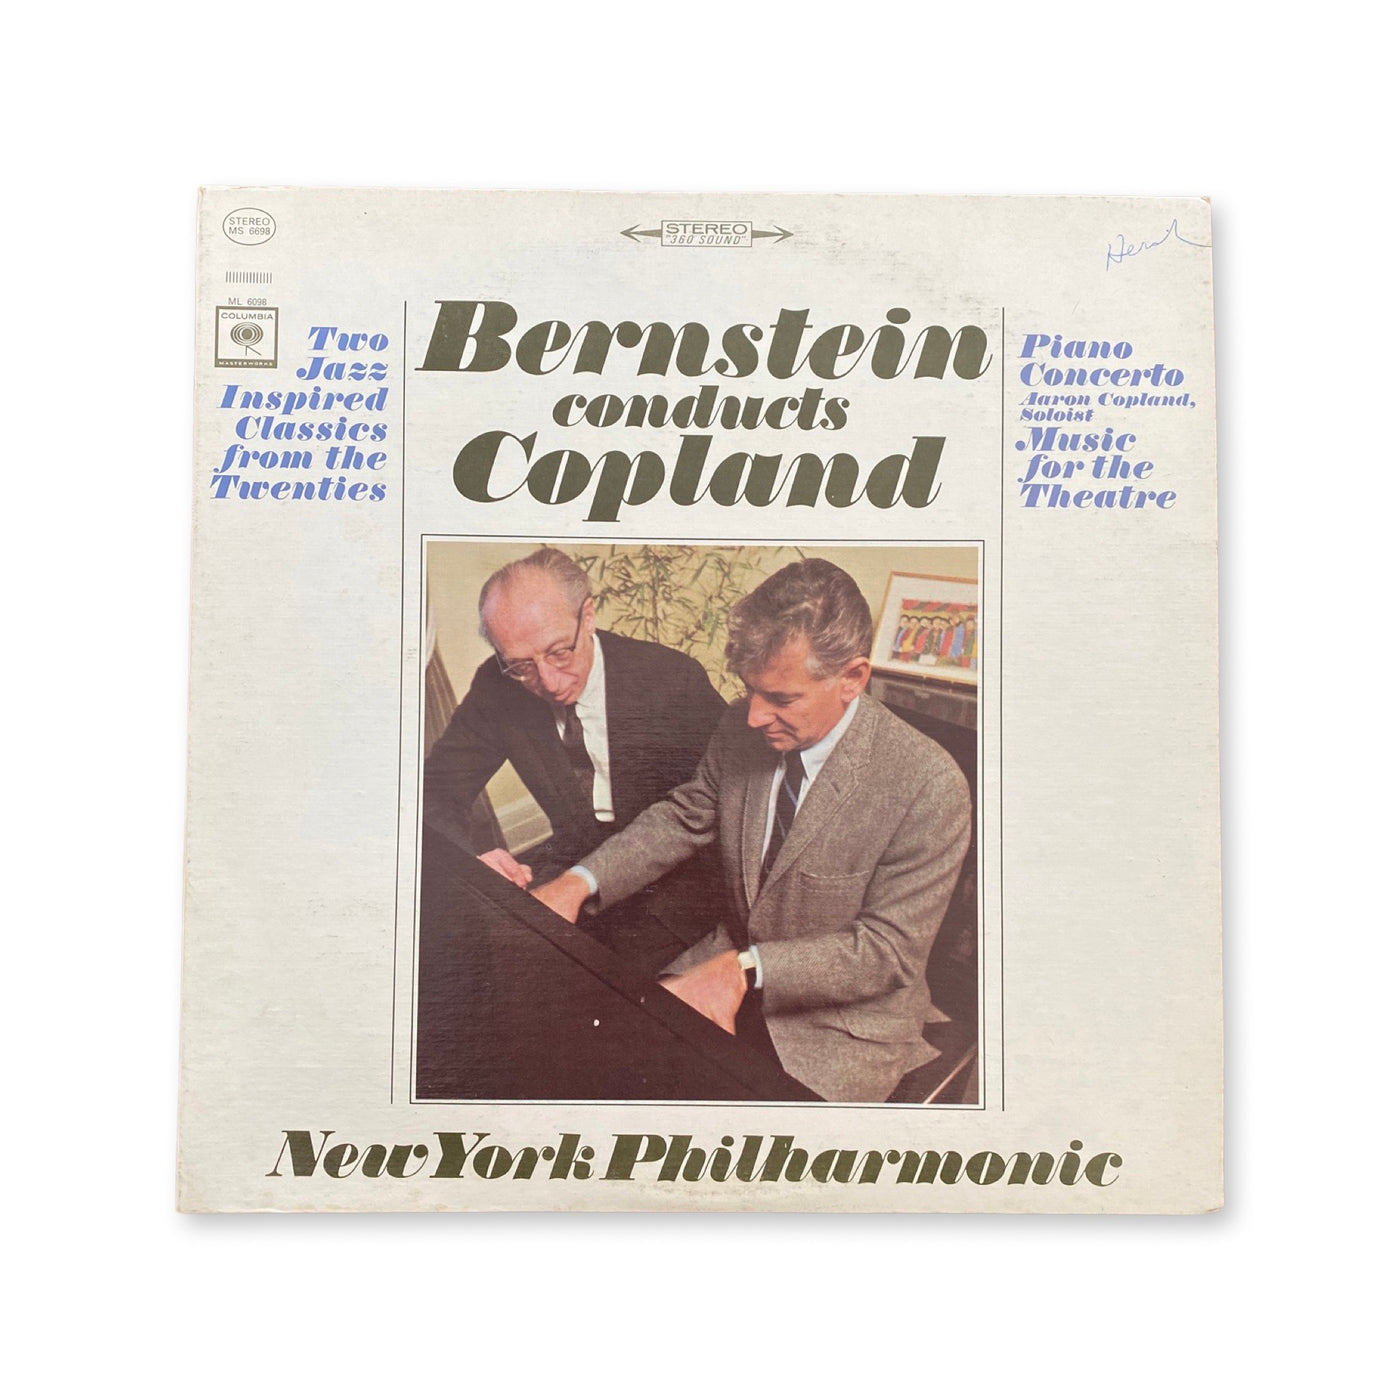 Aaron Copland / Leonard Bernstein, The New York Philharmonic Orchestra - Bernstein Conducts Copland